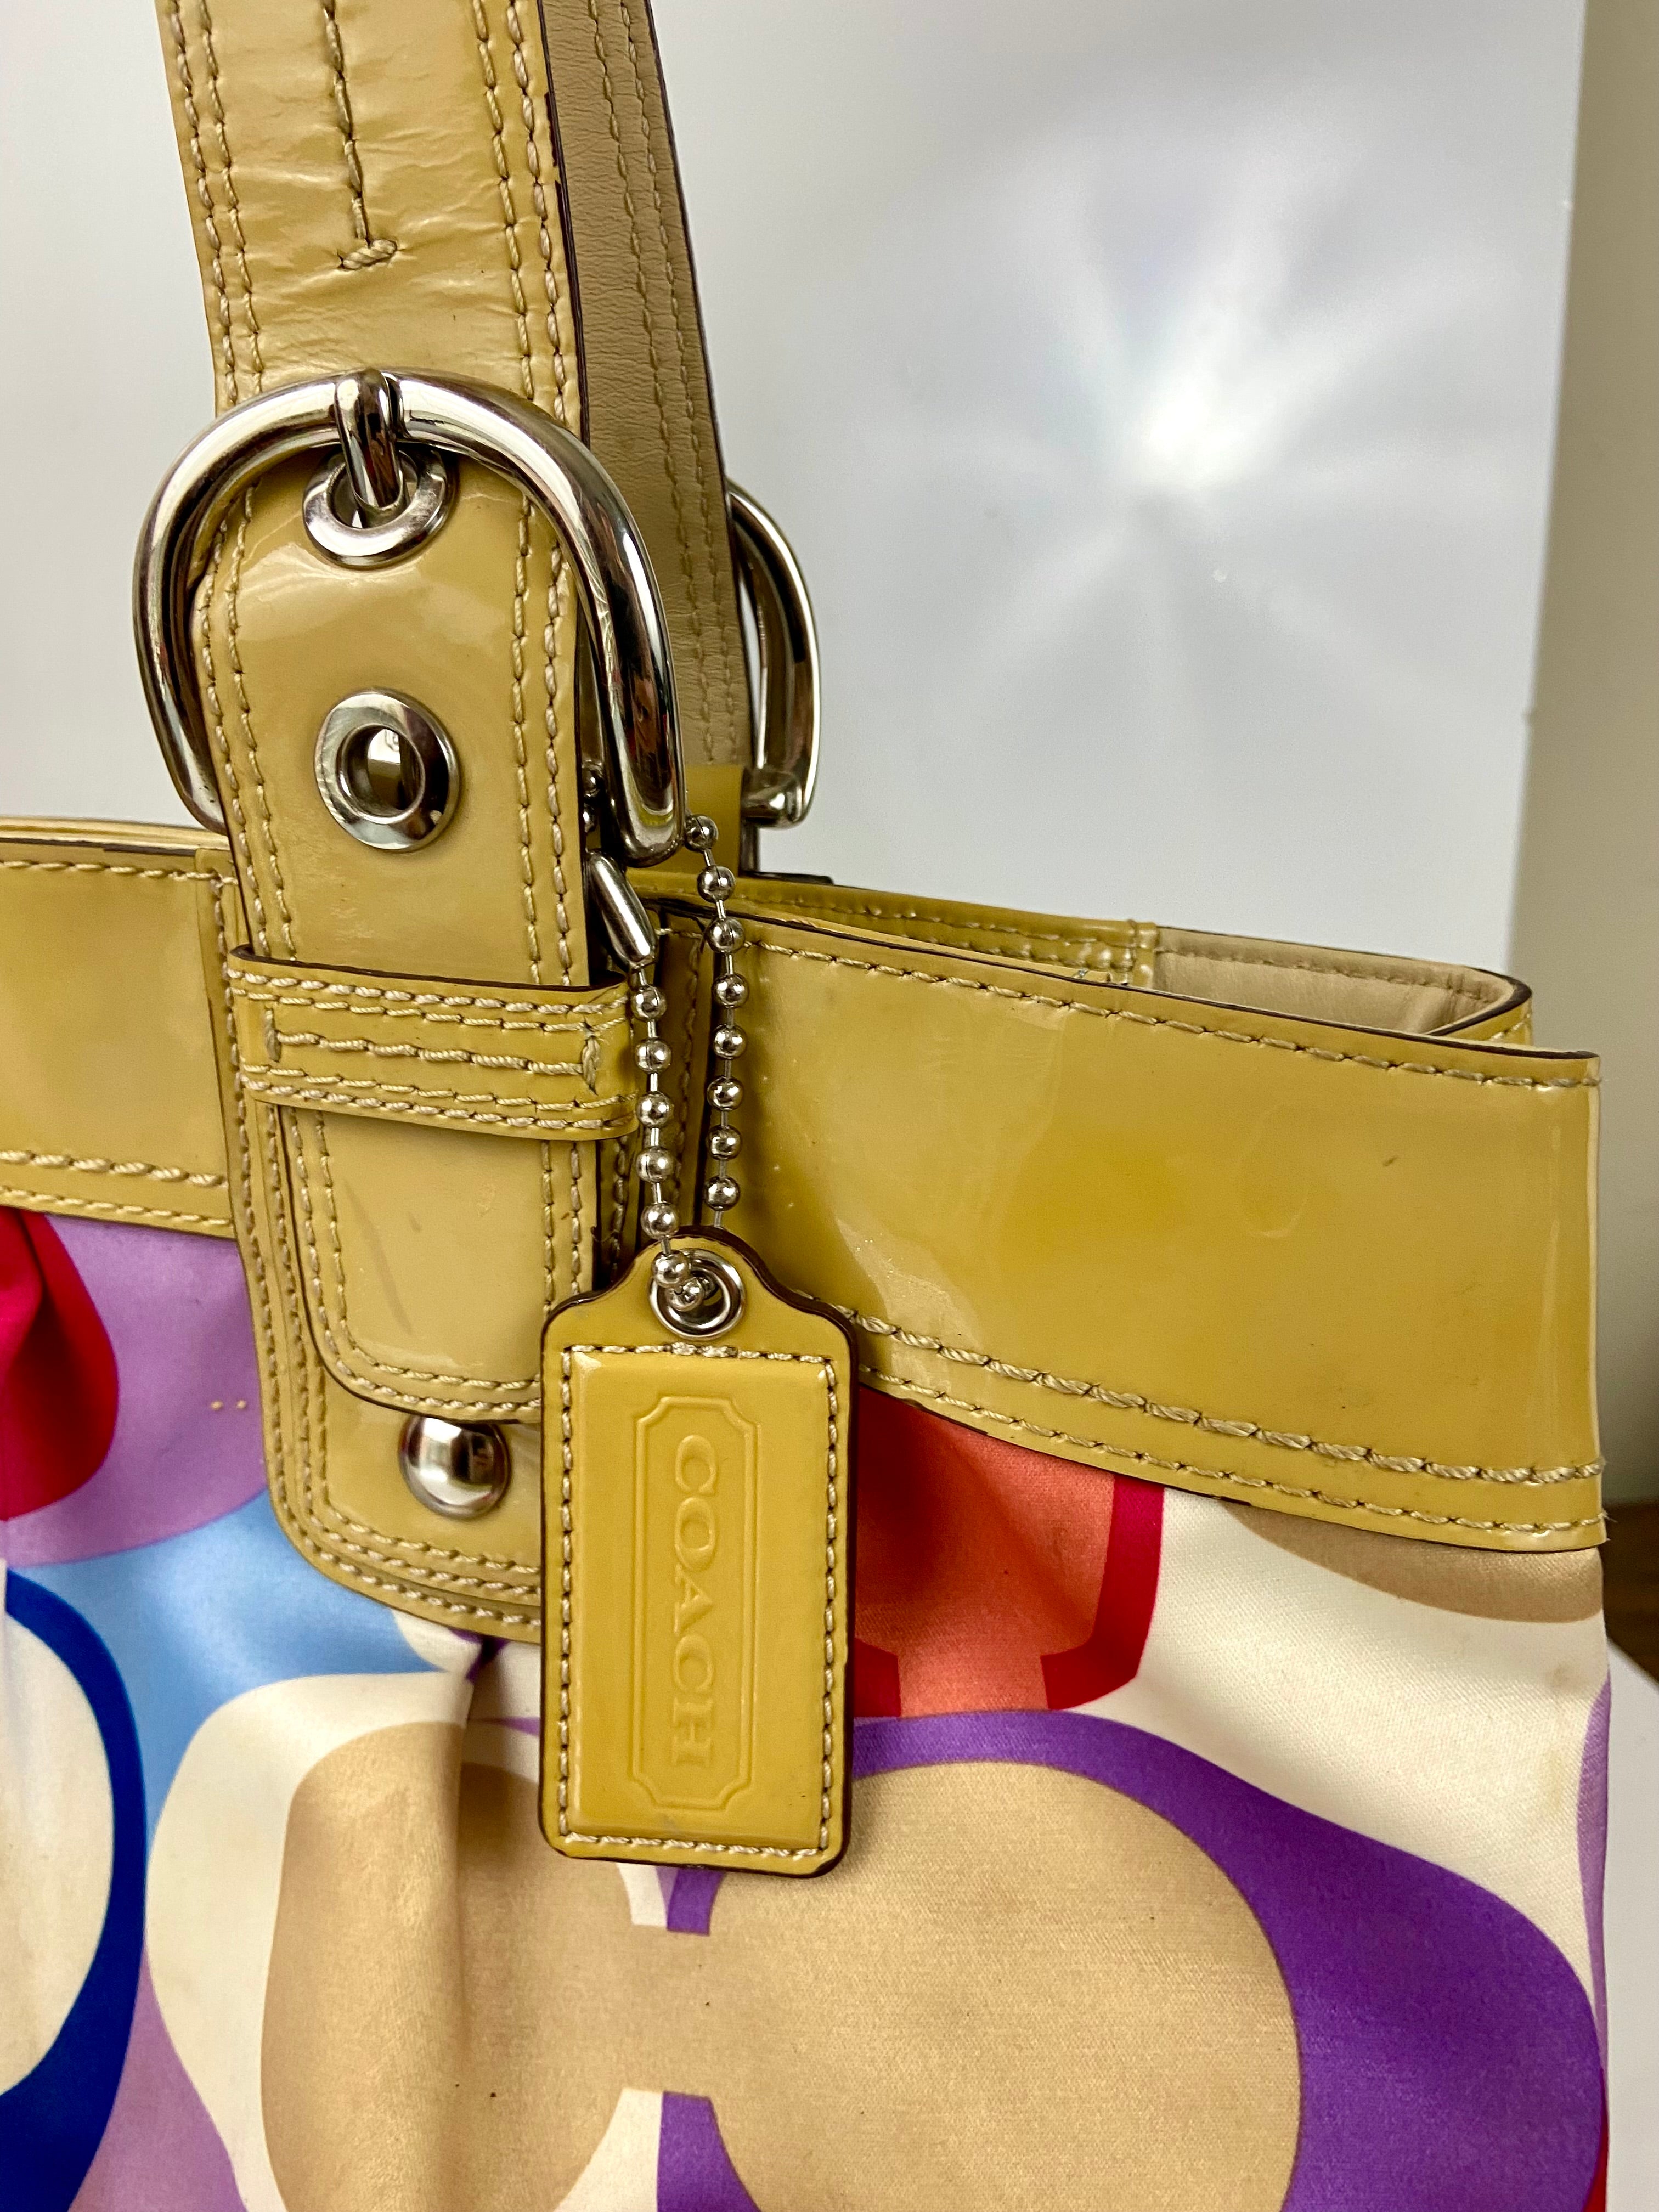 COACH - multicolored handbag